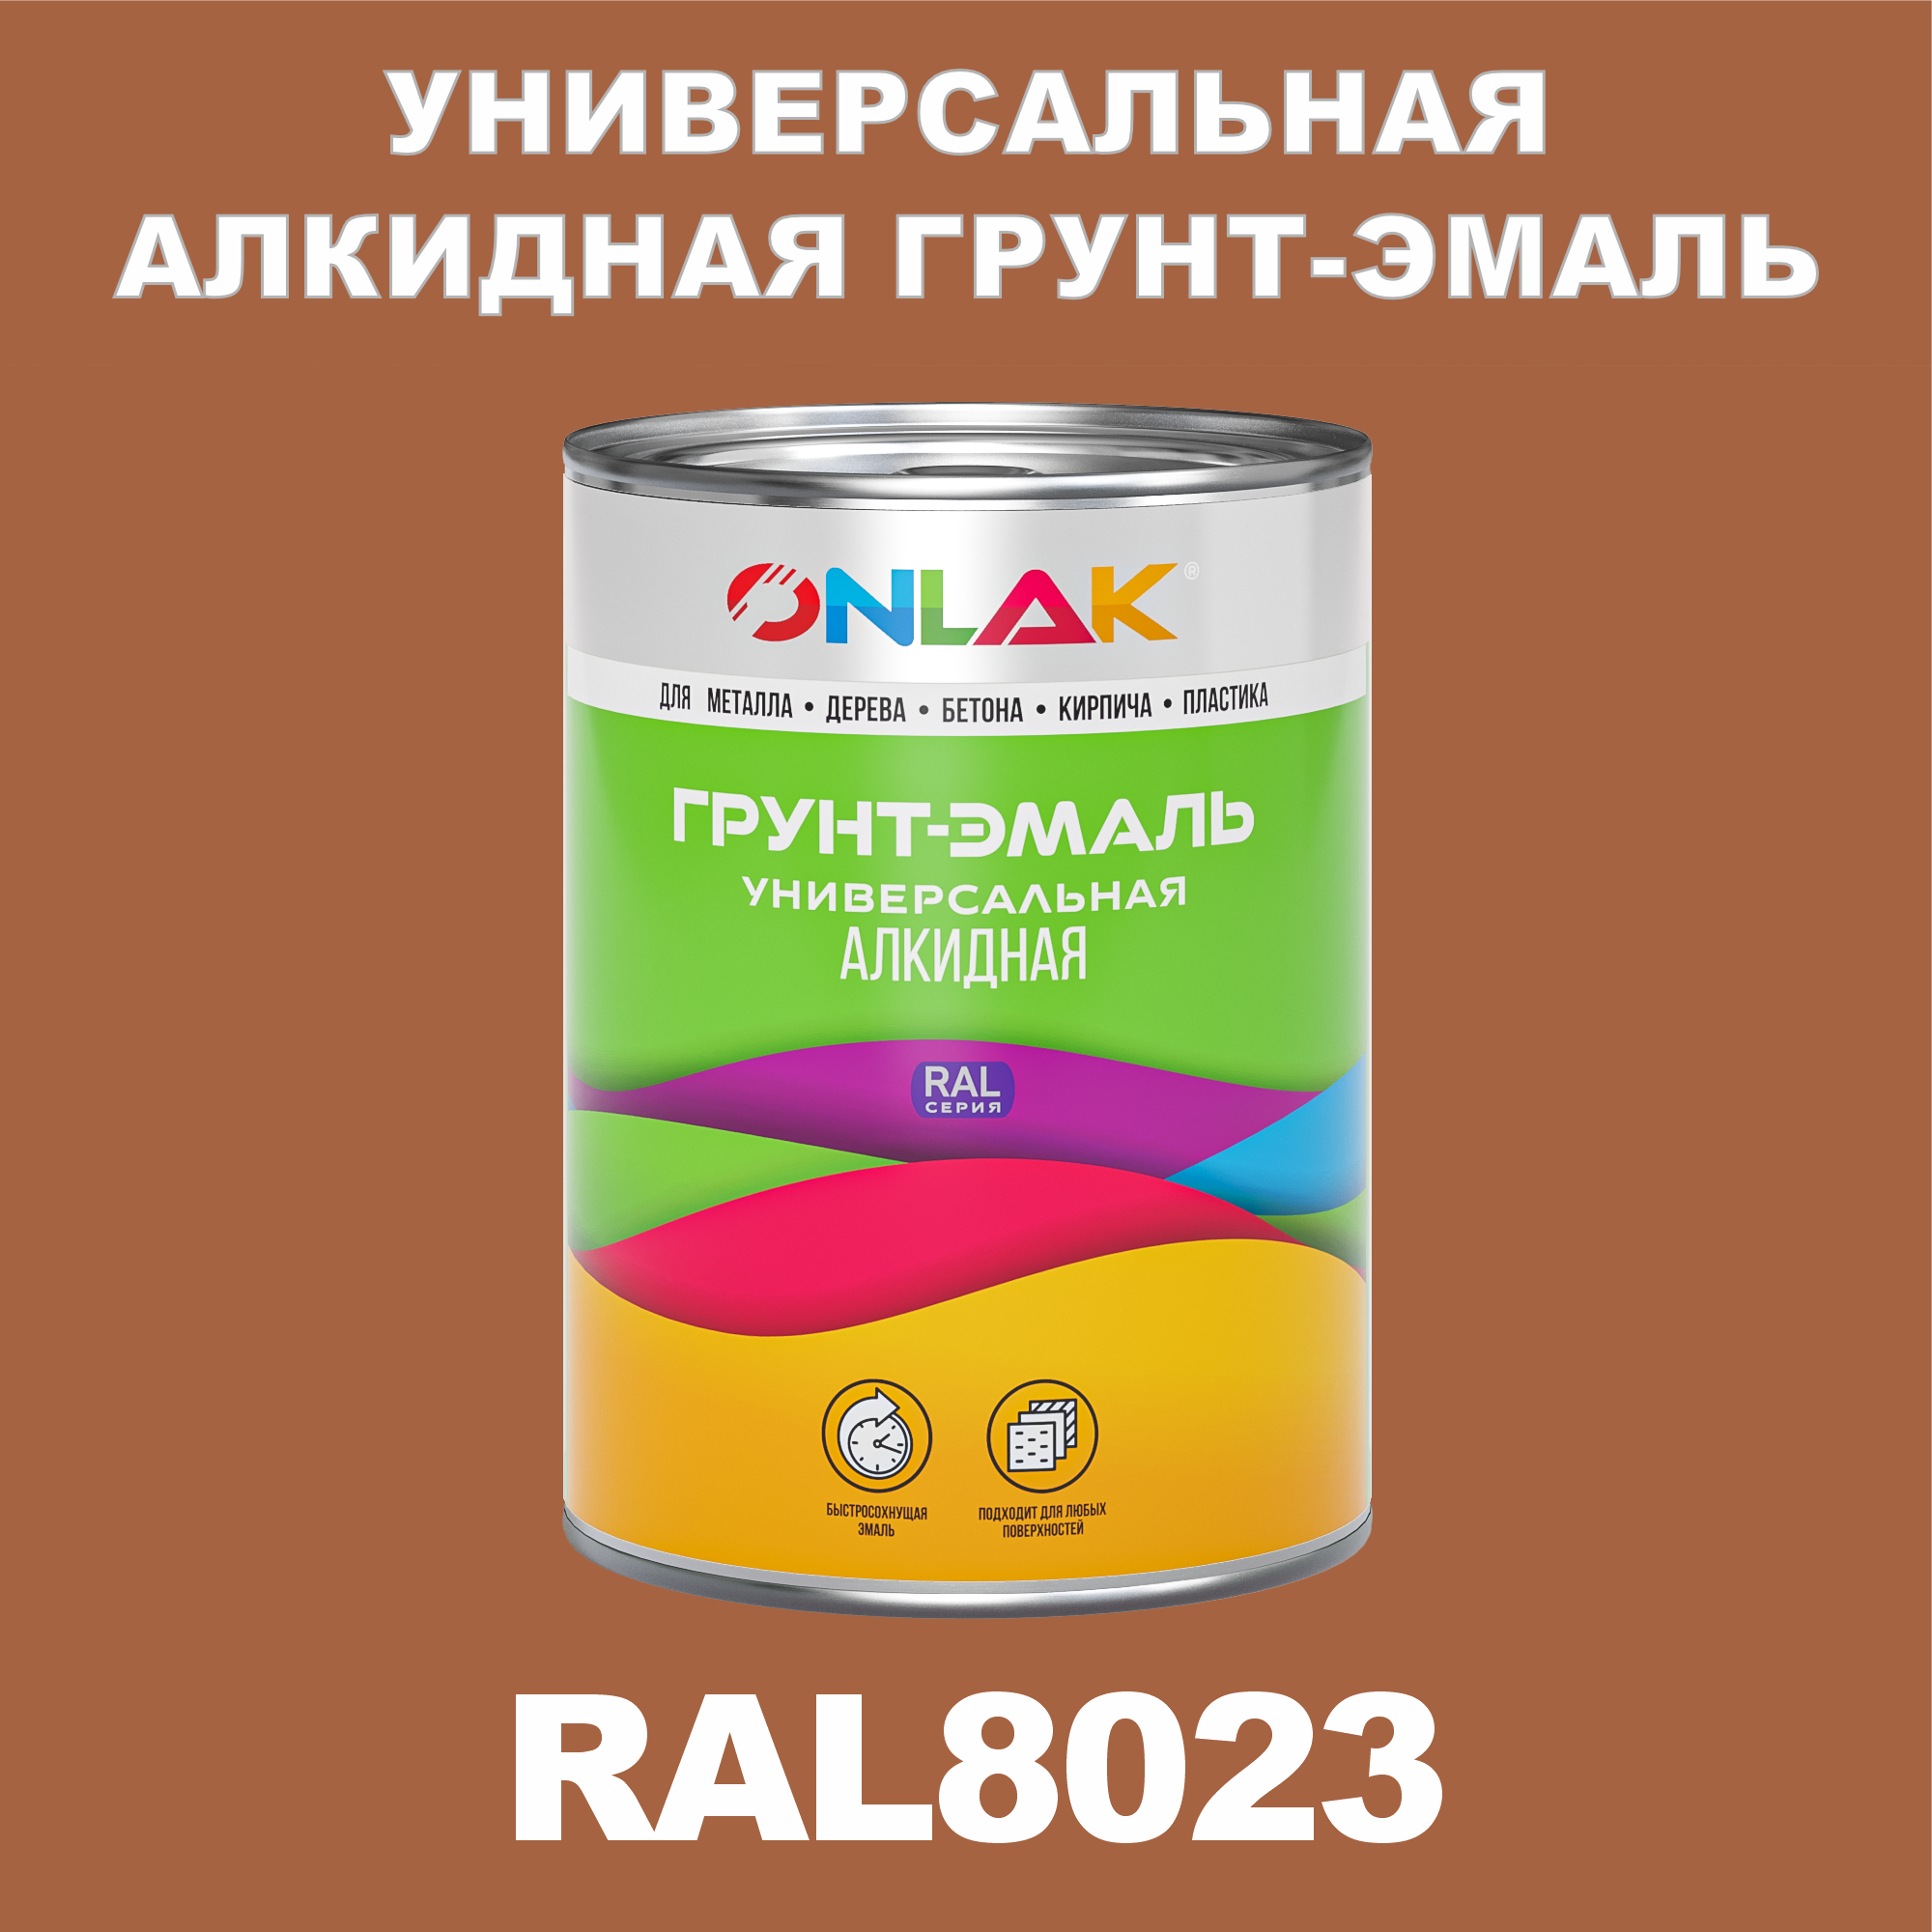 Грунт-эмаль ONLAK 1К RAL8023 антикоррозионная алкидная по металлу по ржавчине 1 кг грунт эмаль yollo по ржавчине алкидная синяя 0 9 кг